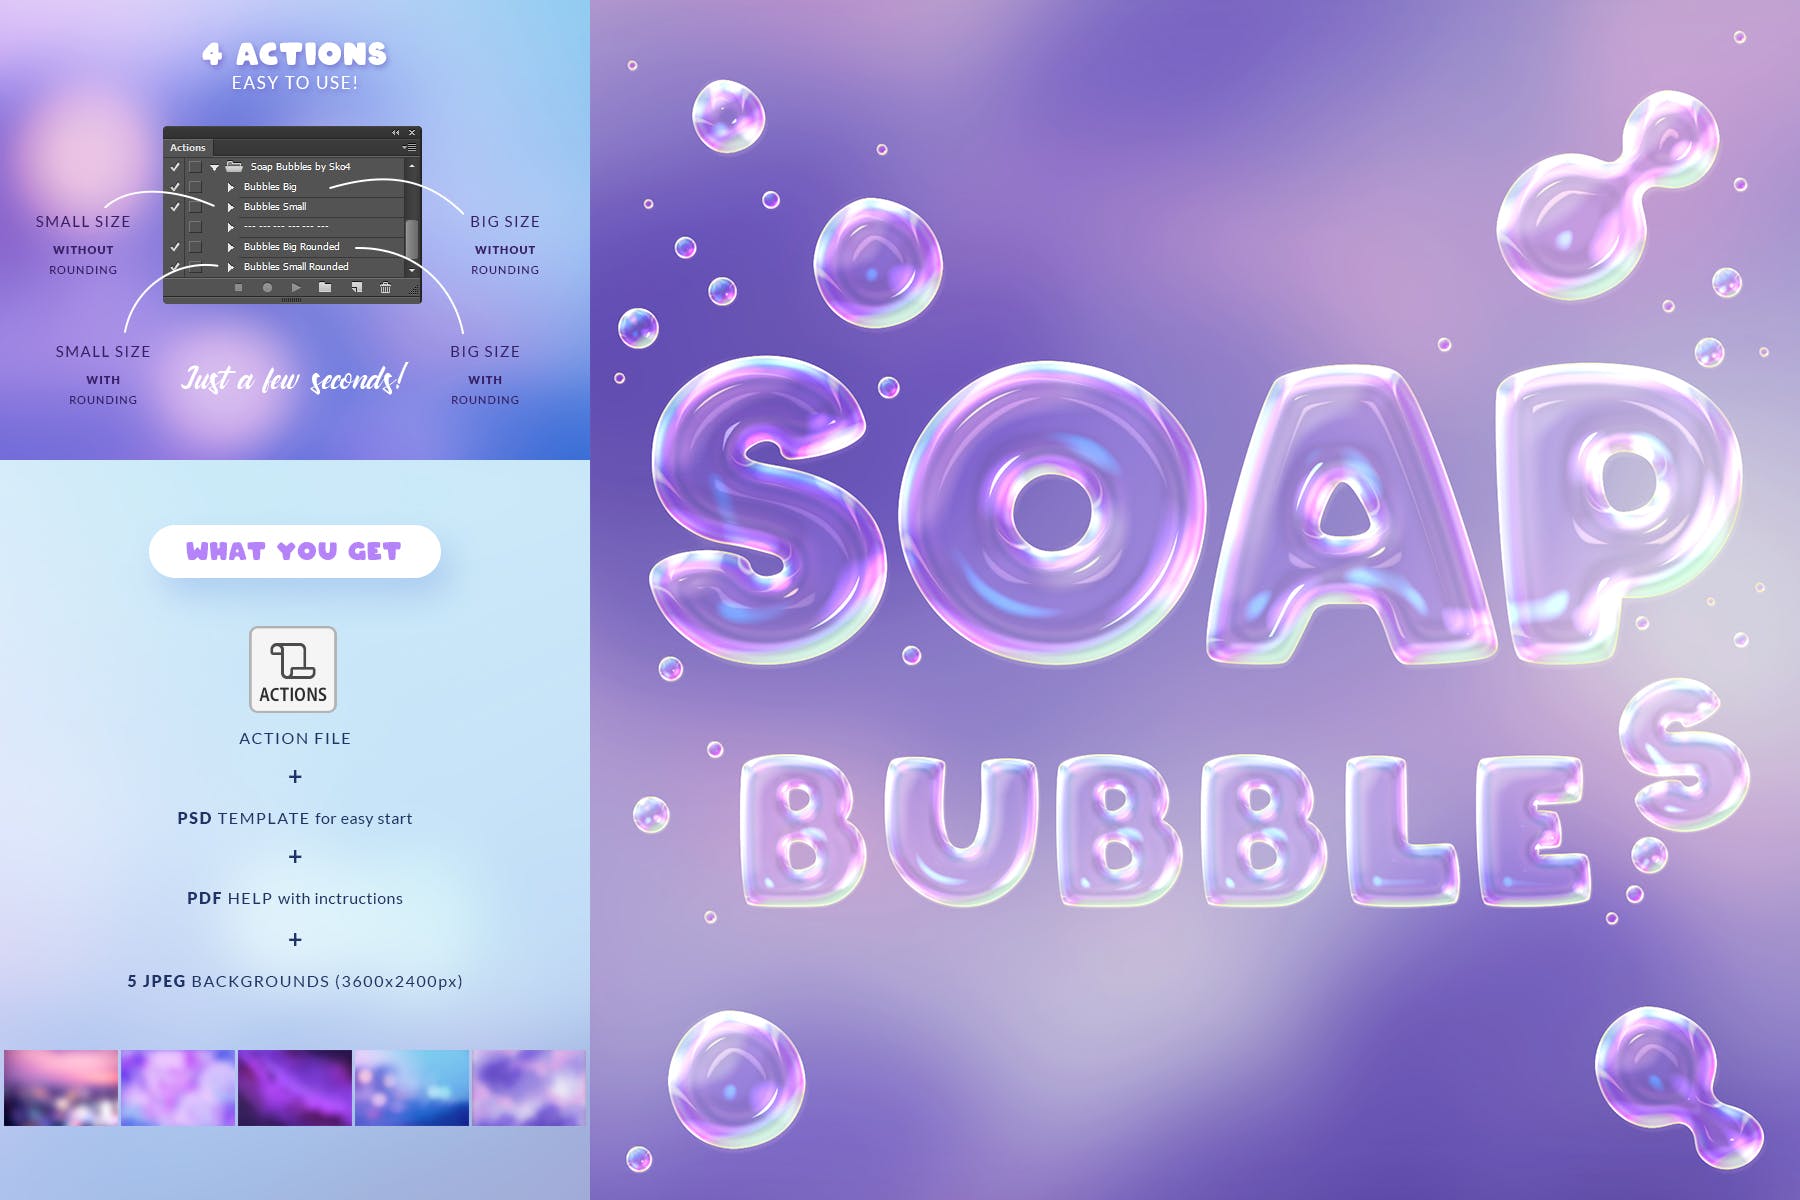 肥皂泡文字特效亿图网易图库精选PS动作 Soap Bubbles Photoshop Action插图(2)